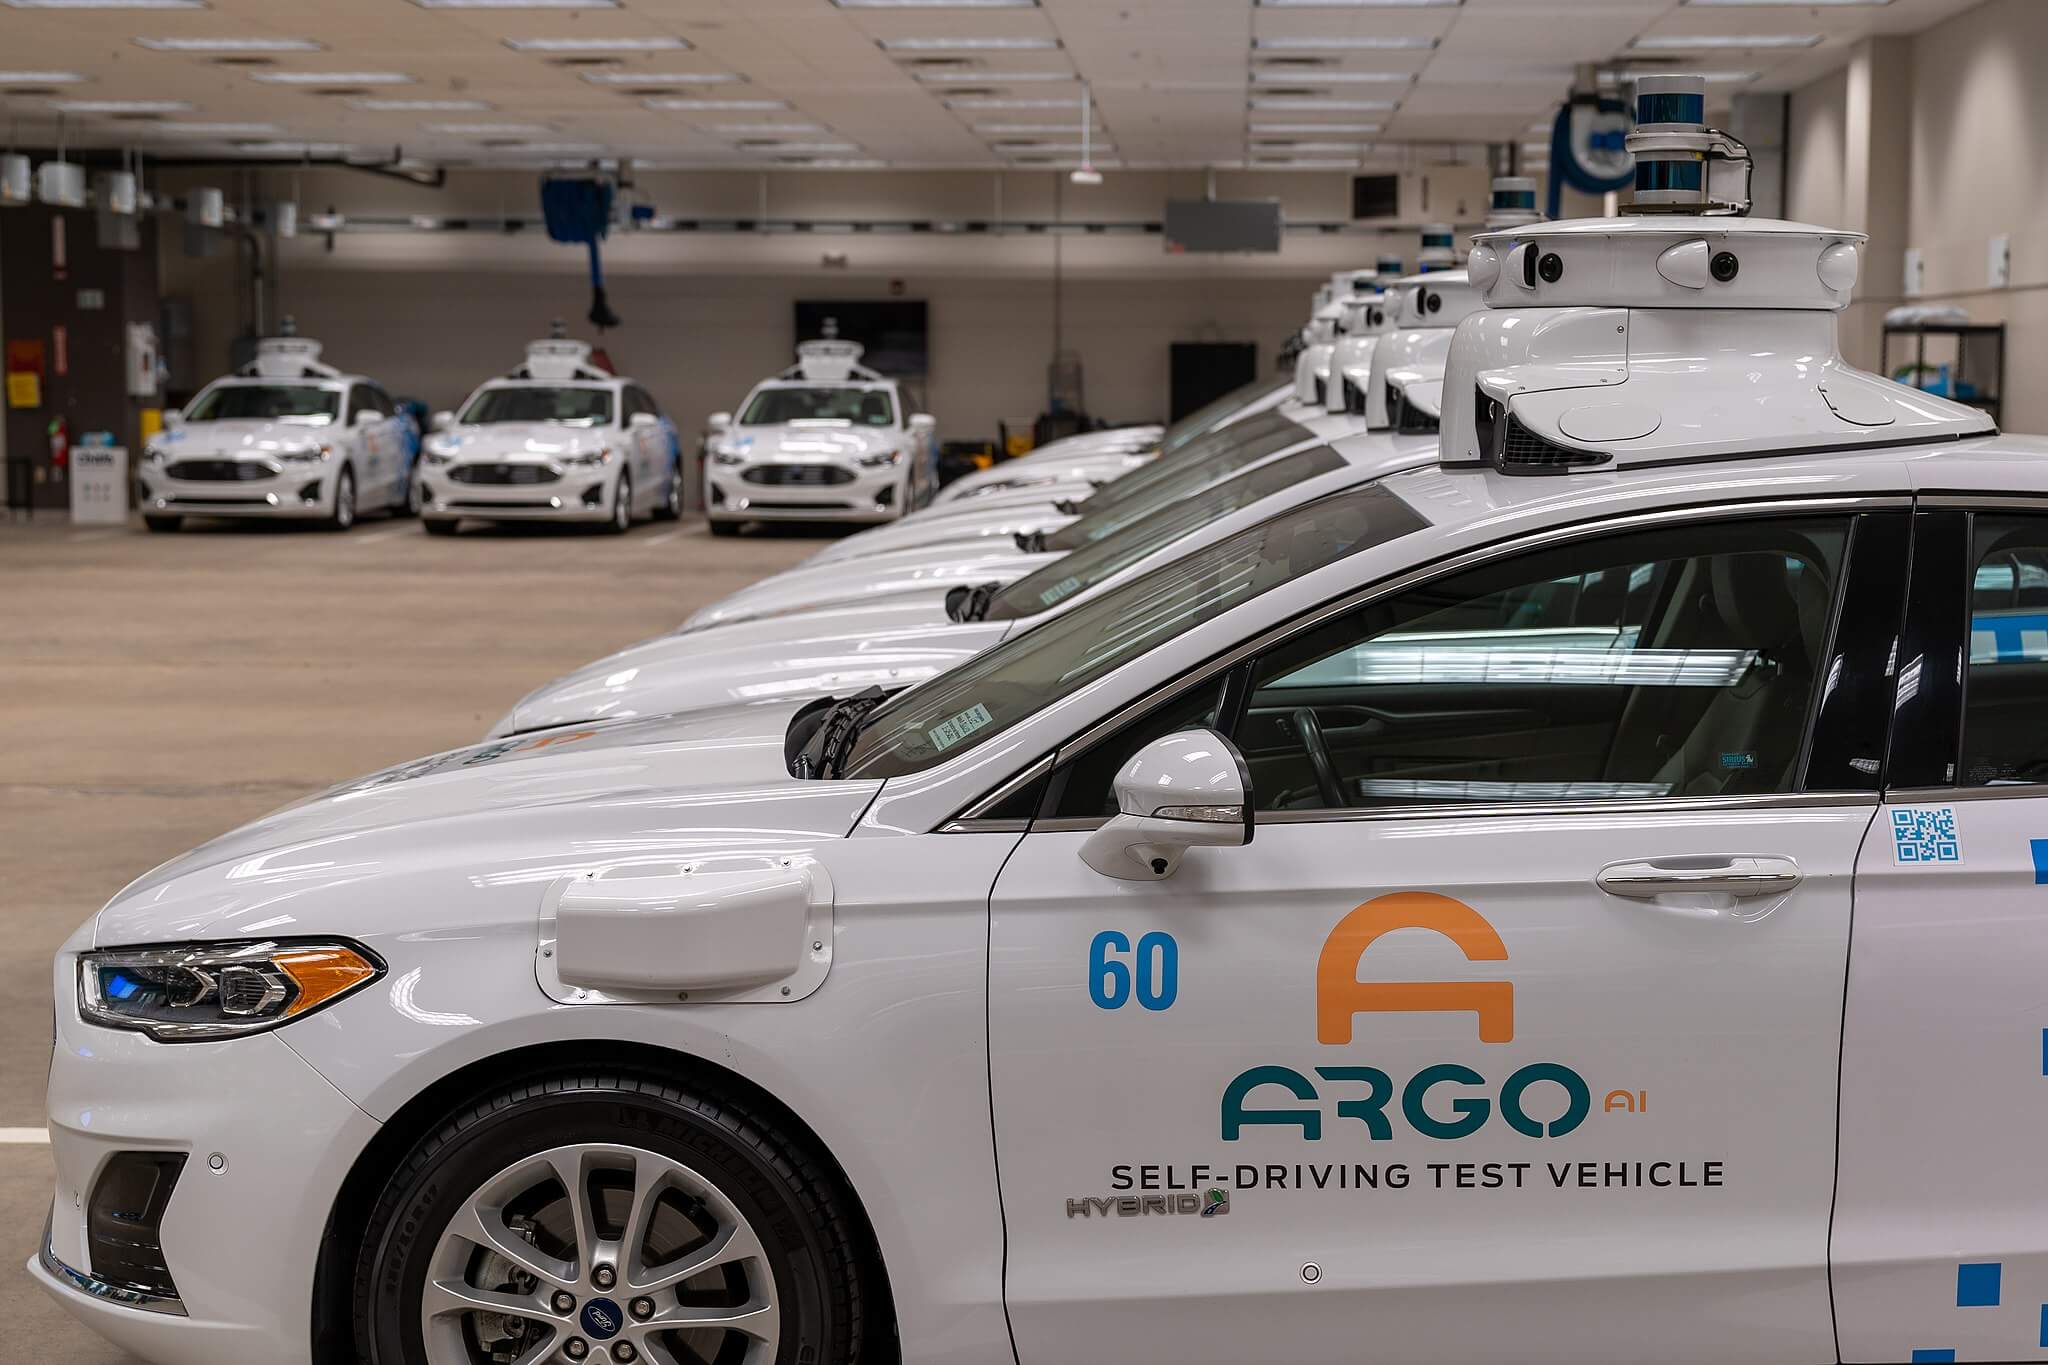 تغلق شركة السيارات المستقلة Argo AI المدعومة من شركة فورد أبوابها